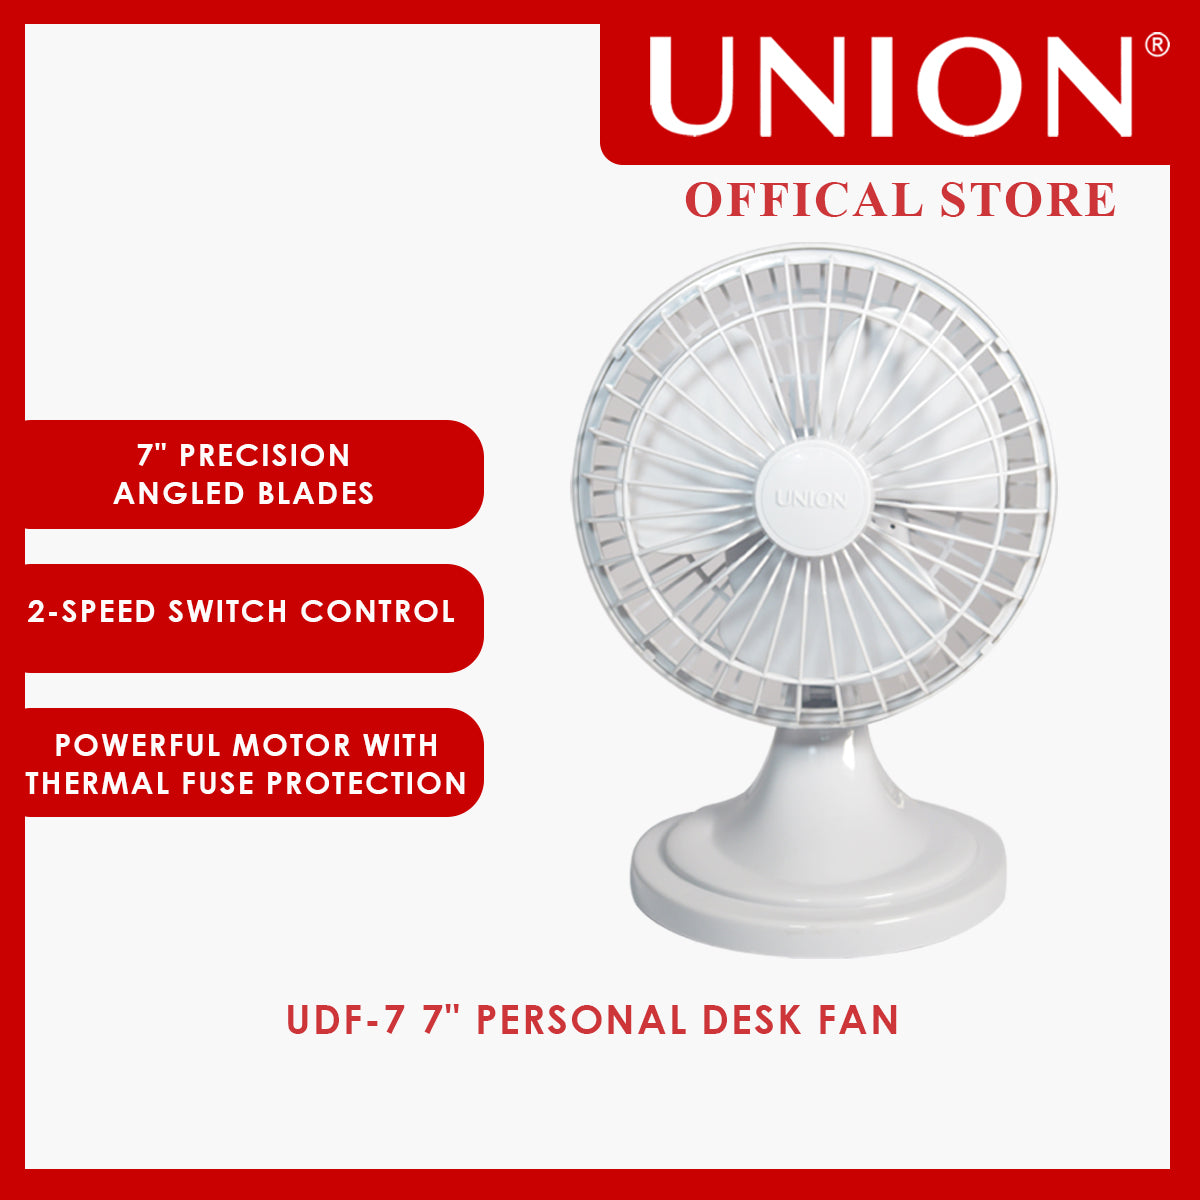 Union® 7" Personal Desk Fan